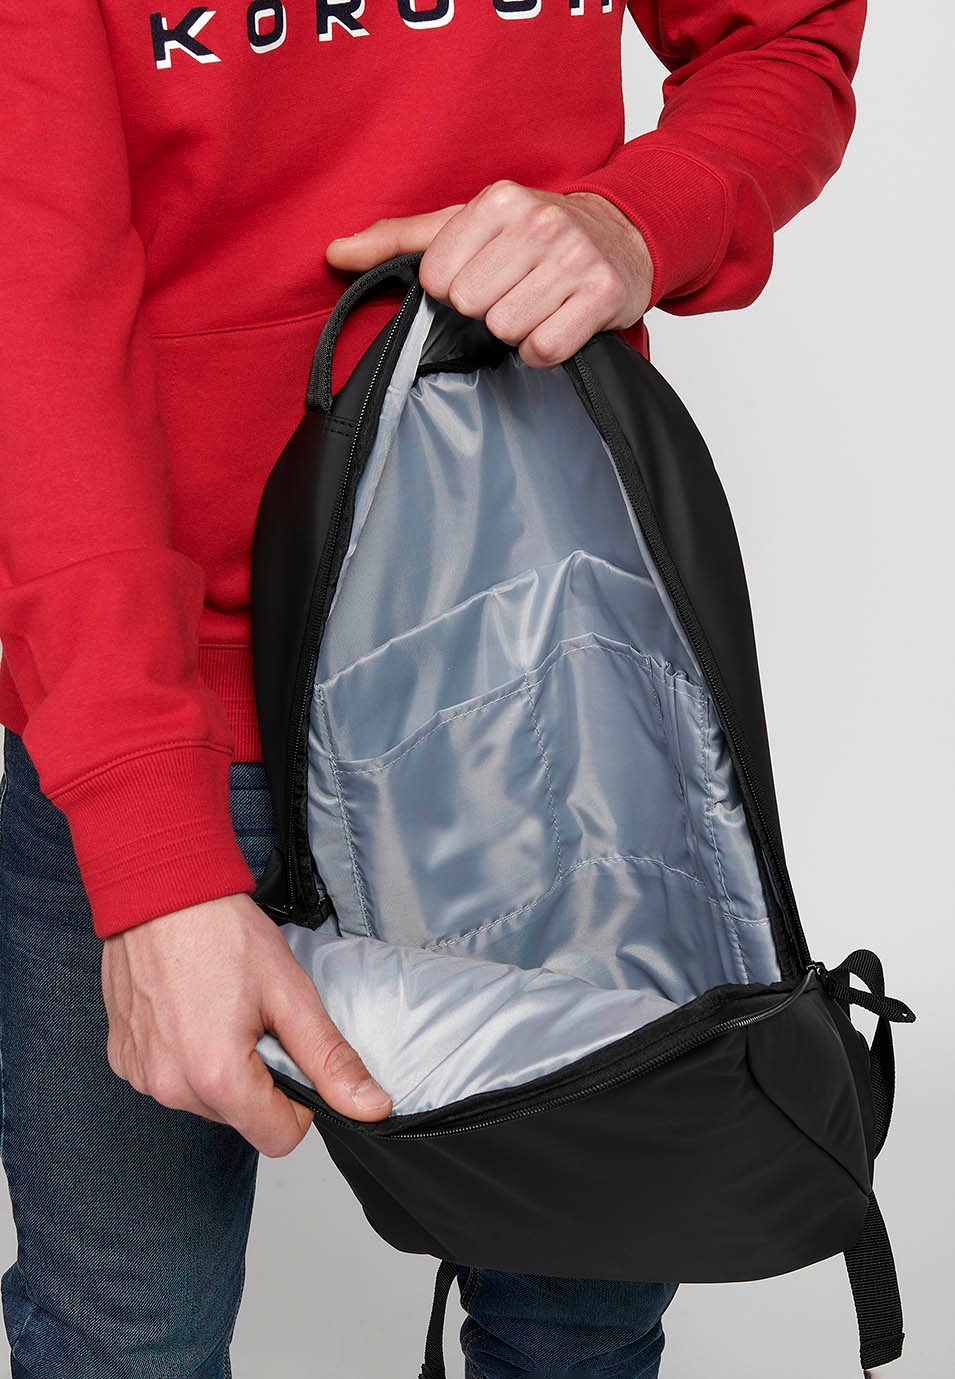 Koröshi Rucksack mit Reißverschluss und Laptoptasche innen in Schwarz 6